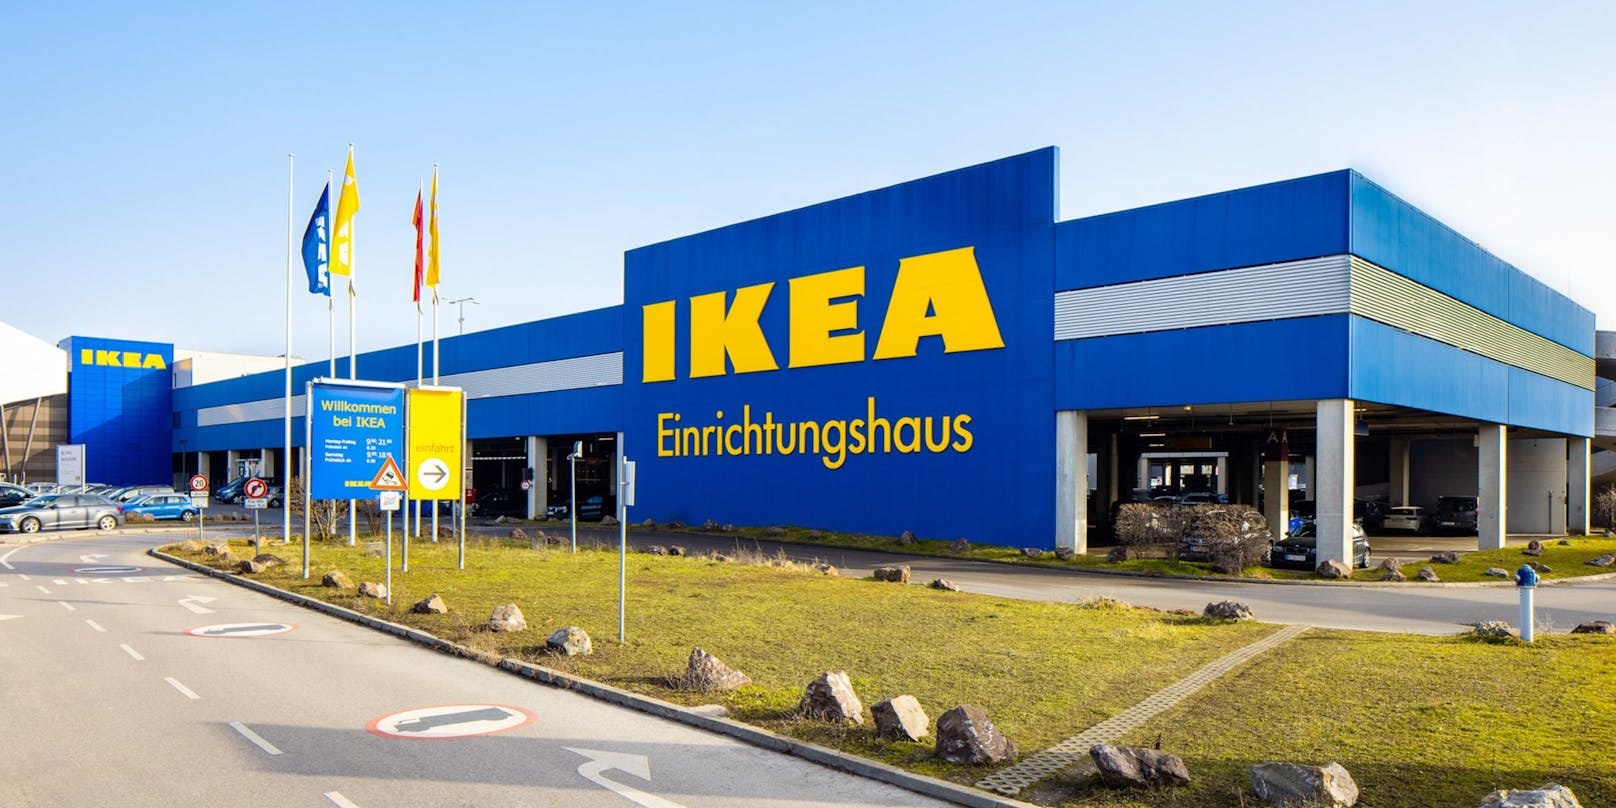 Ikea bleibt während des Umbaus offen.